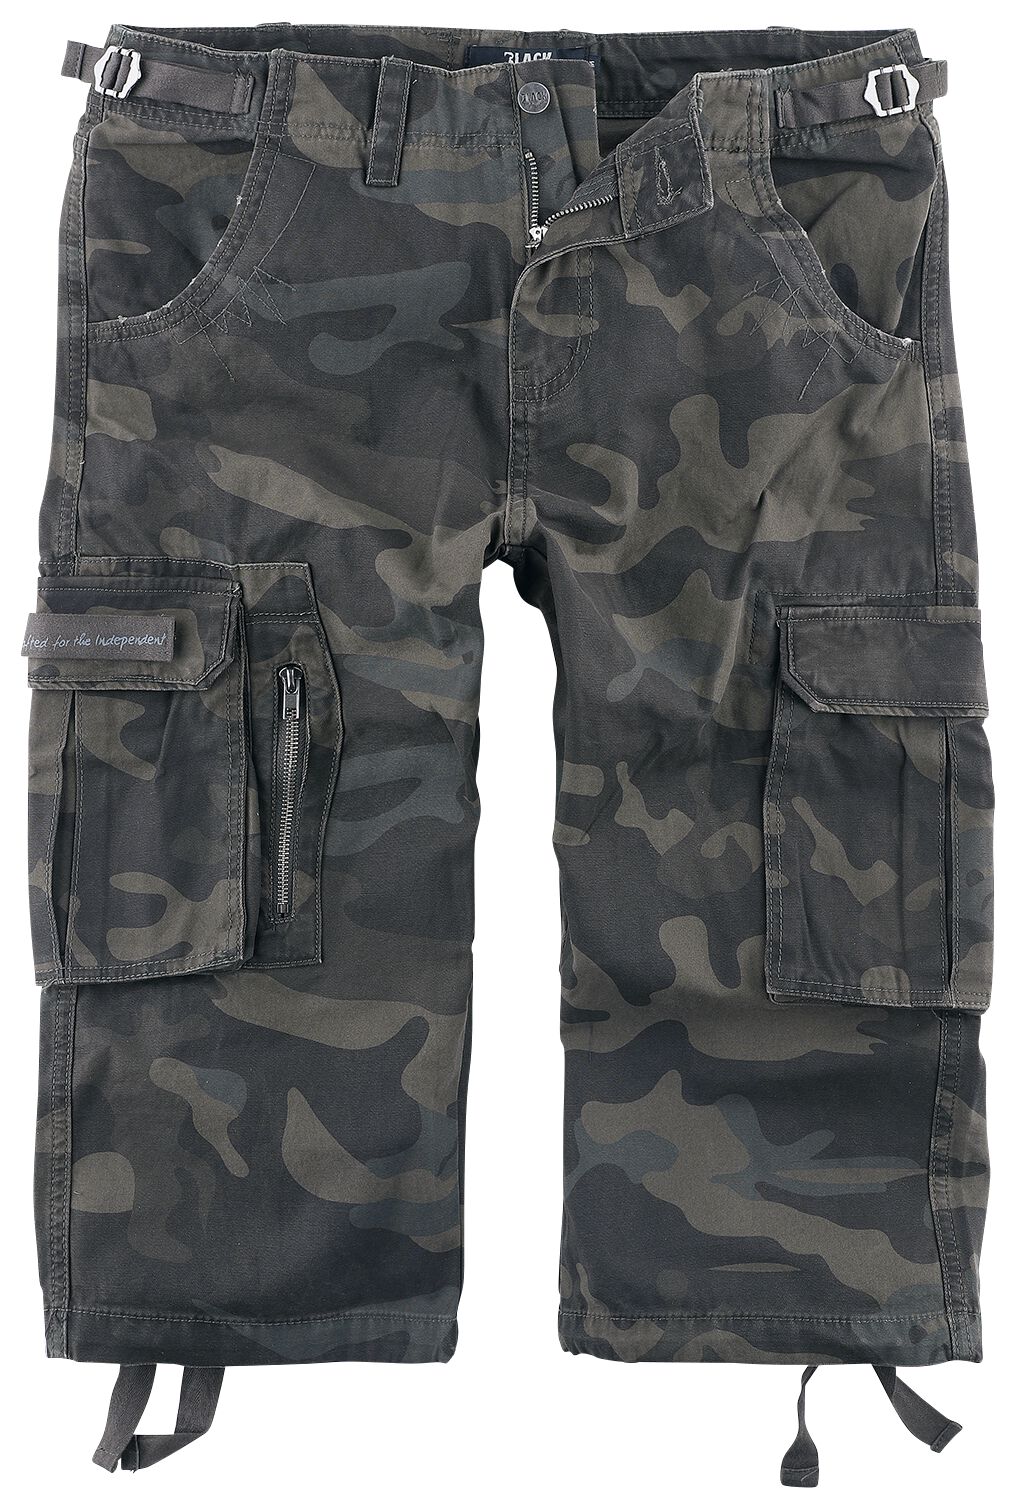 Black Premium by EMP 3/4 Army Vintage Shorts Short darkcamo in XXL